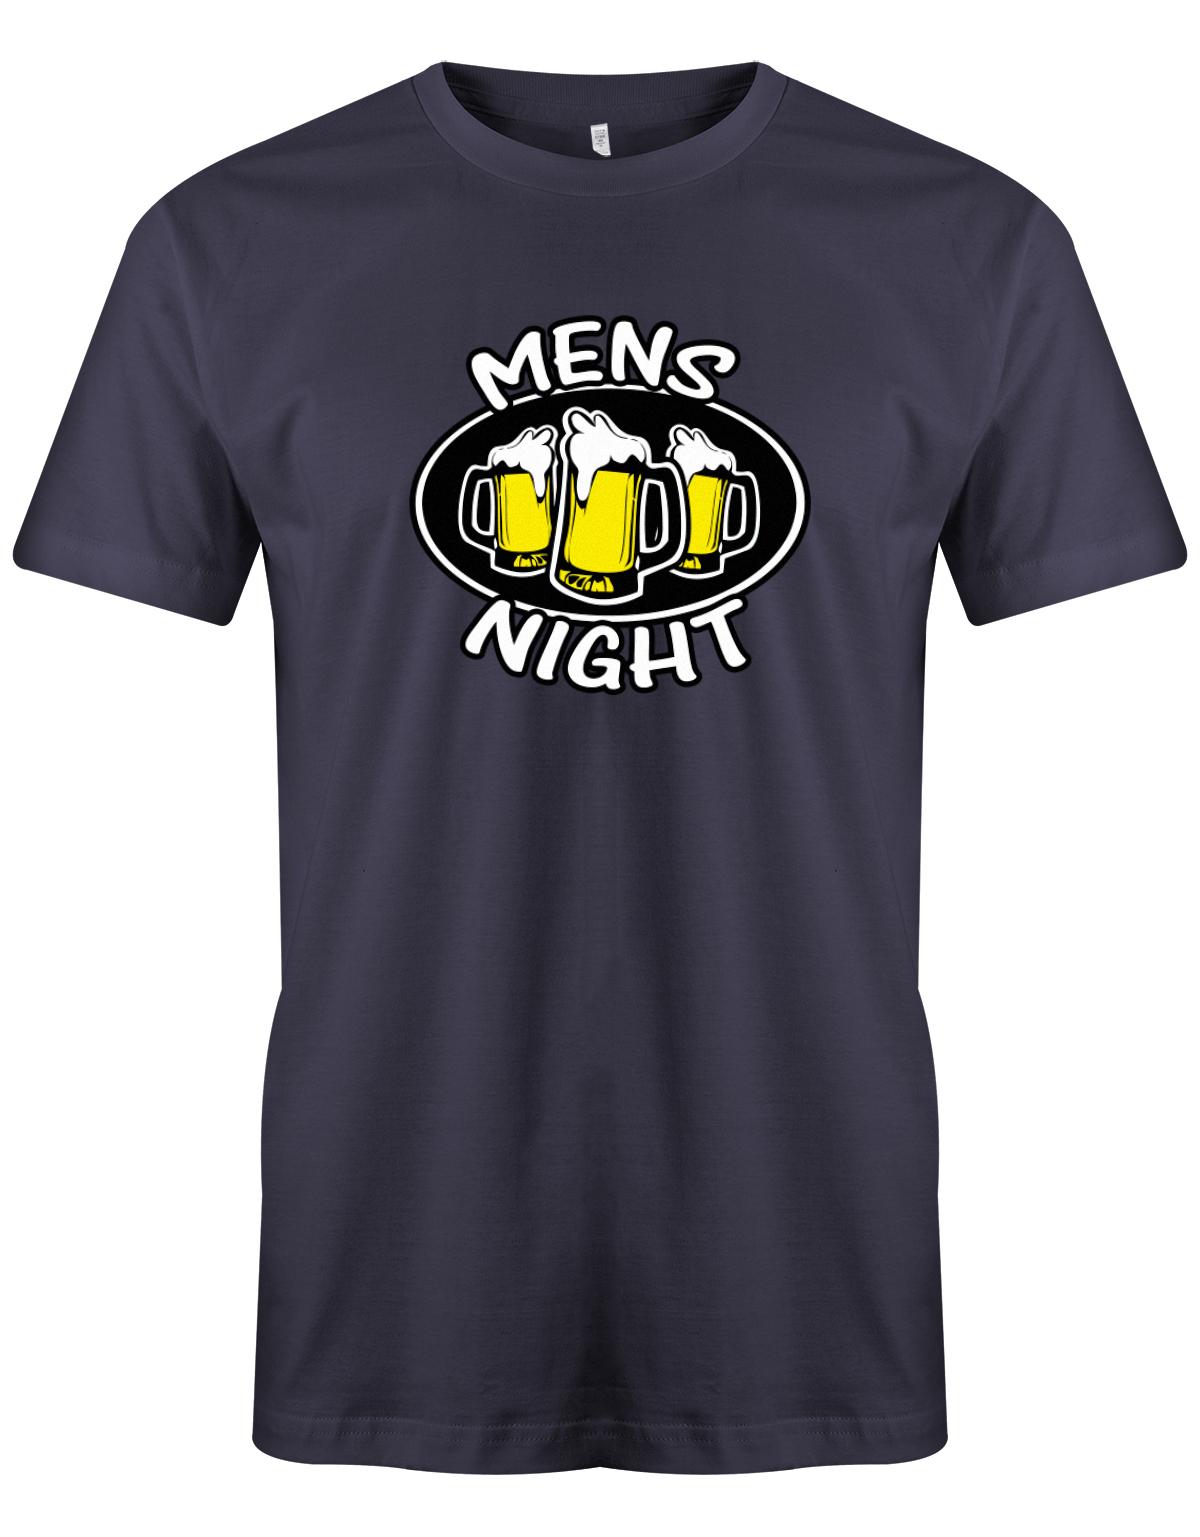 Mens-Night-Bier-Herren-Shirt-Navy